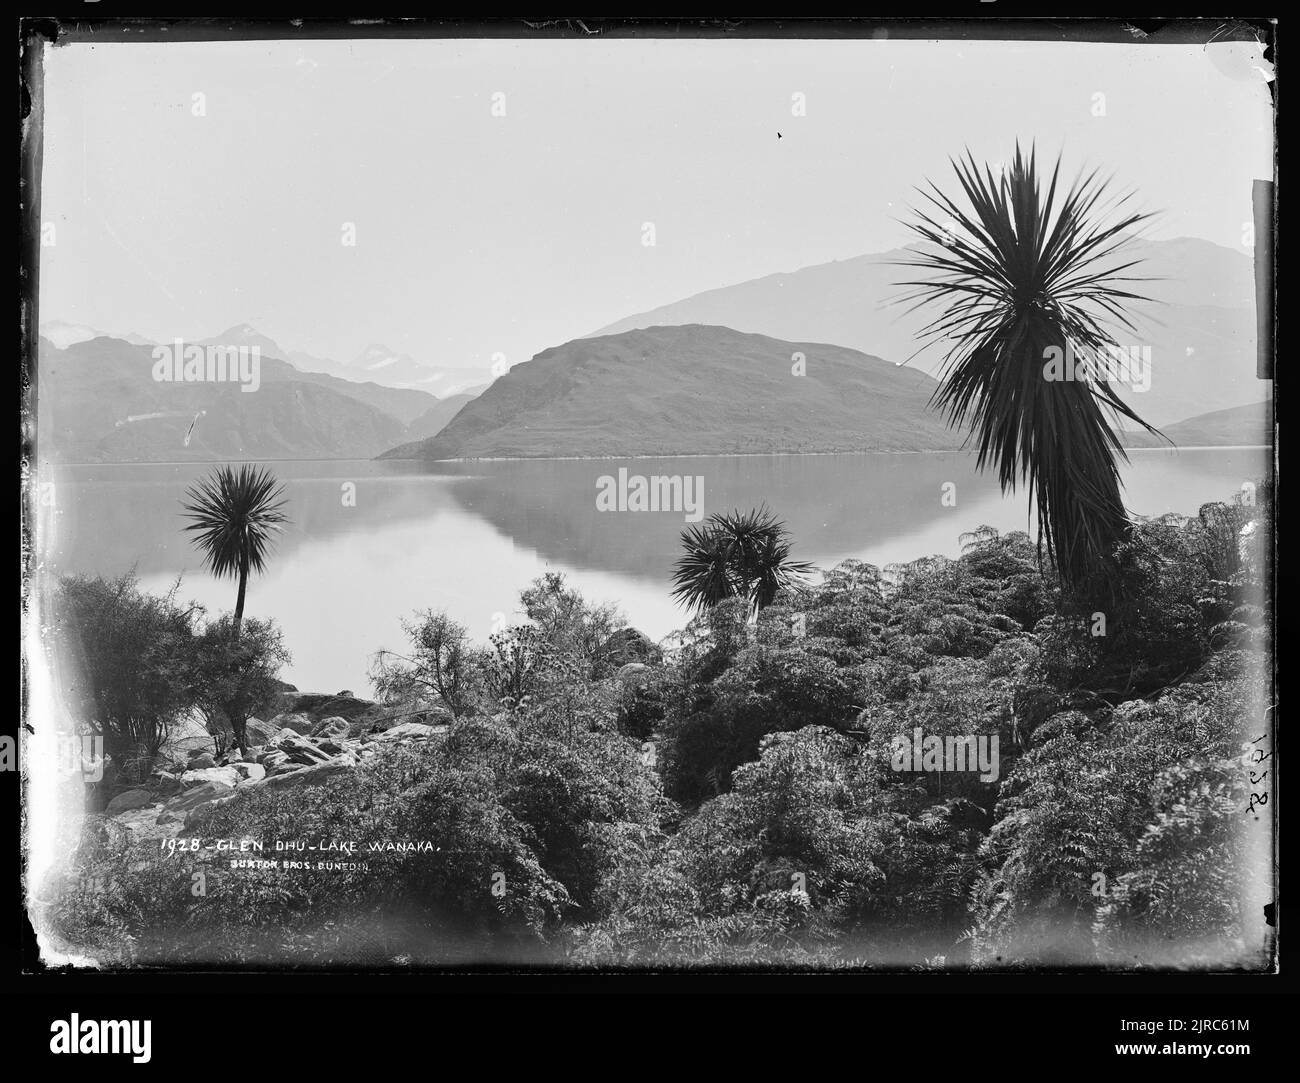 Glendhu, Lac Wanaka, Nouvelle-Zélande, par Burton Brothers. Banque D'Images